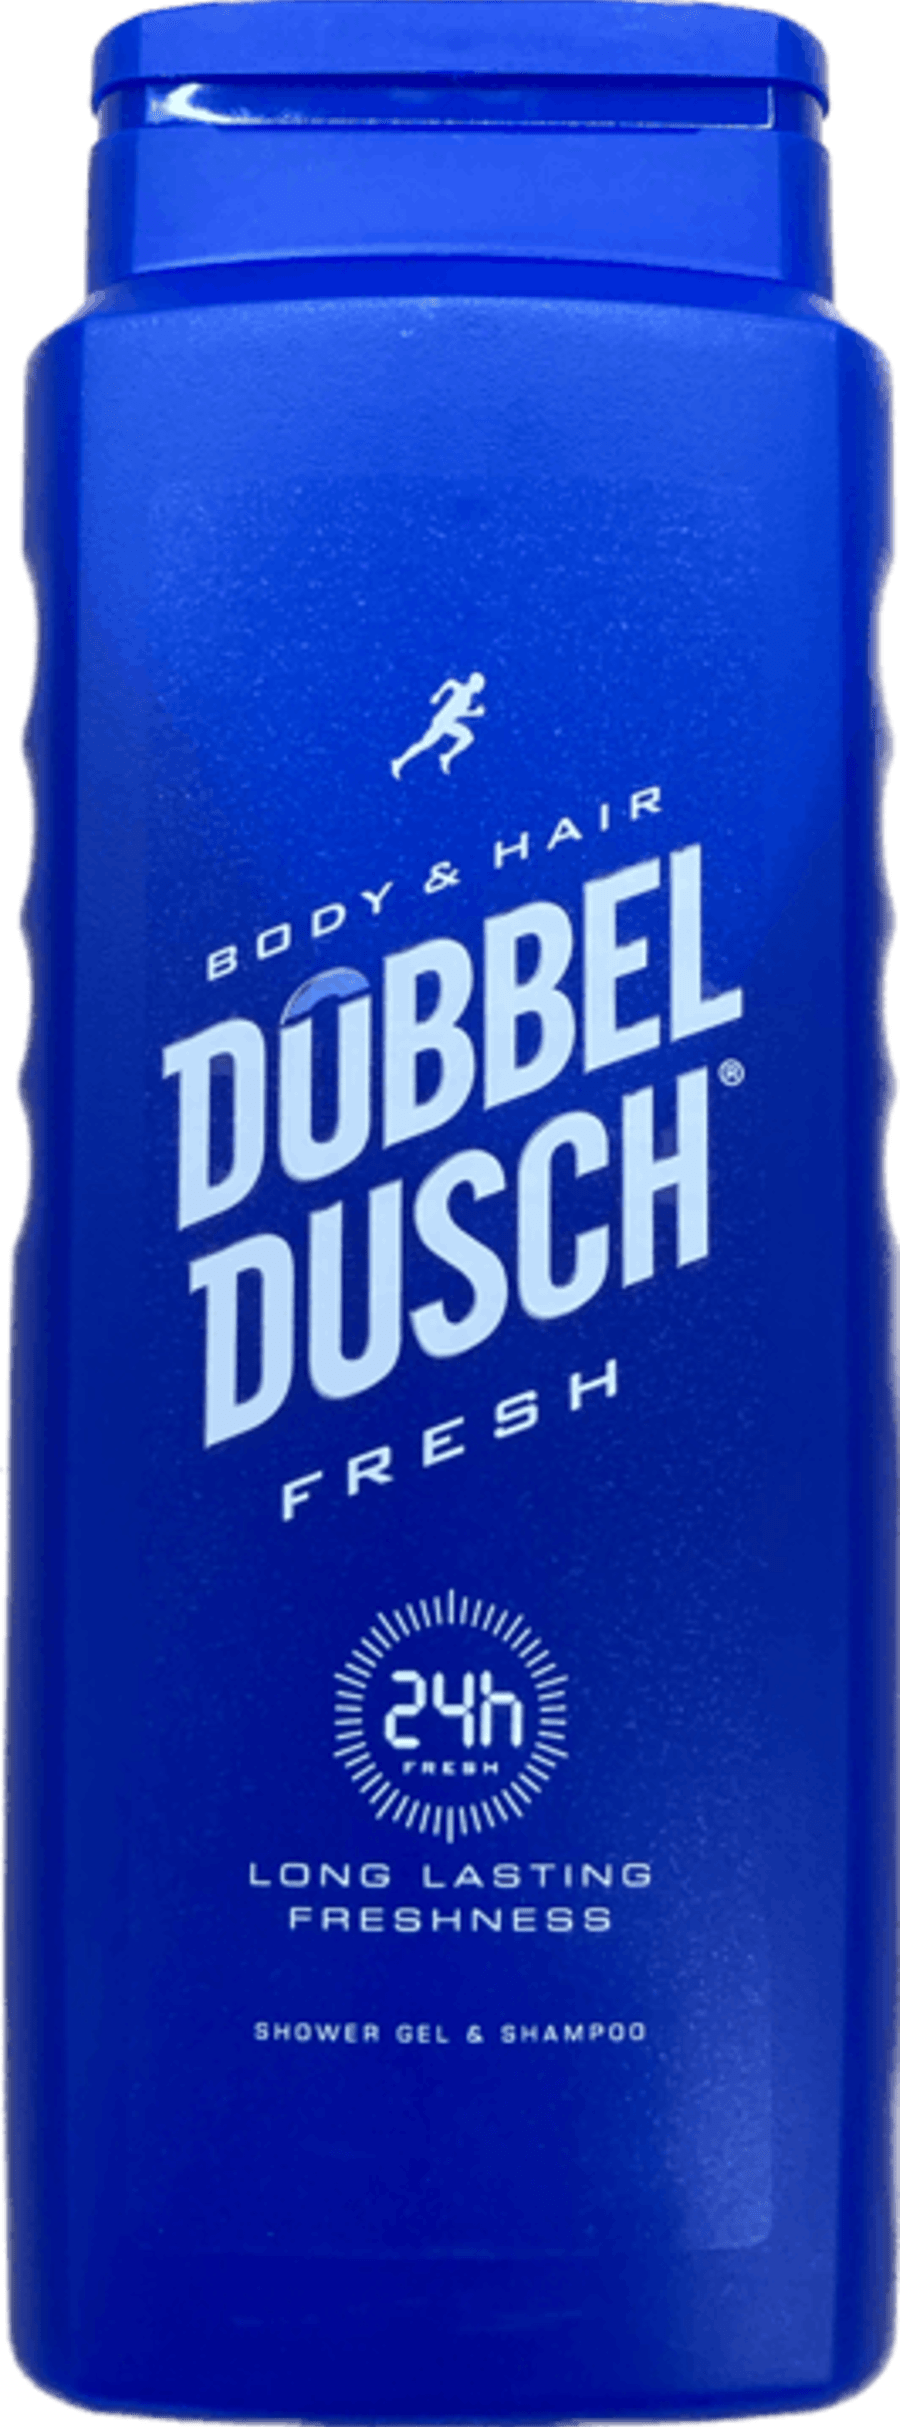 Dobble shower fresh 500 ml